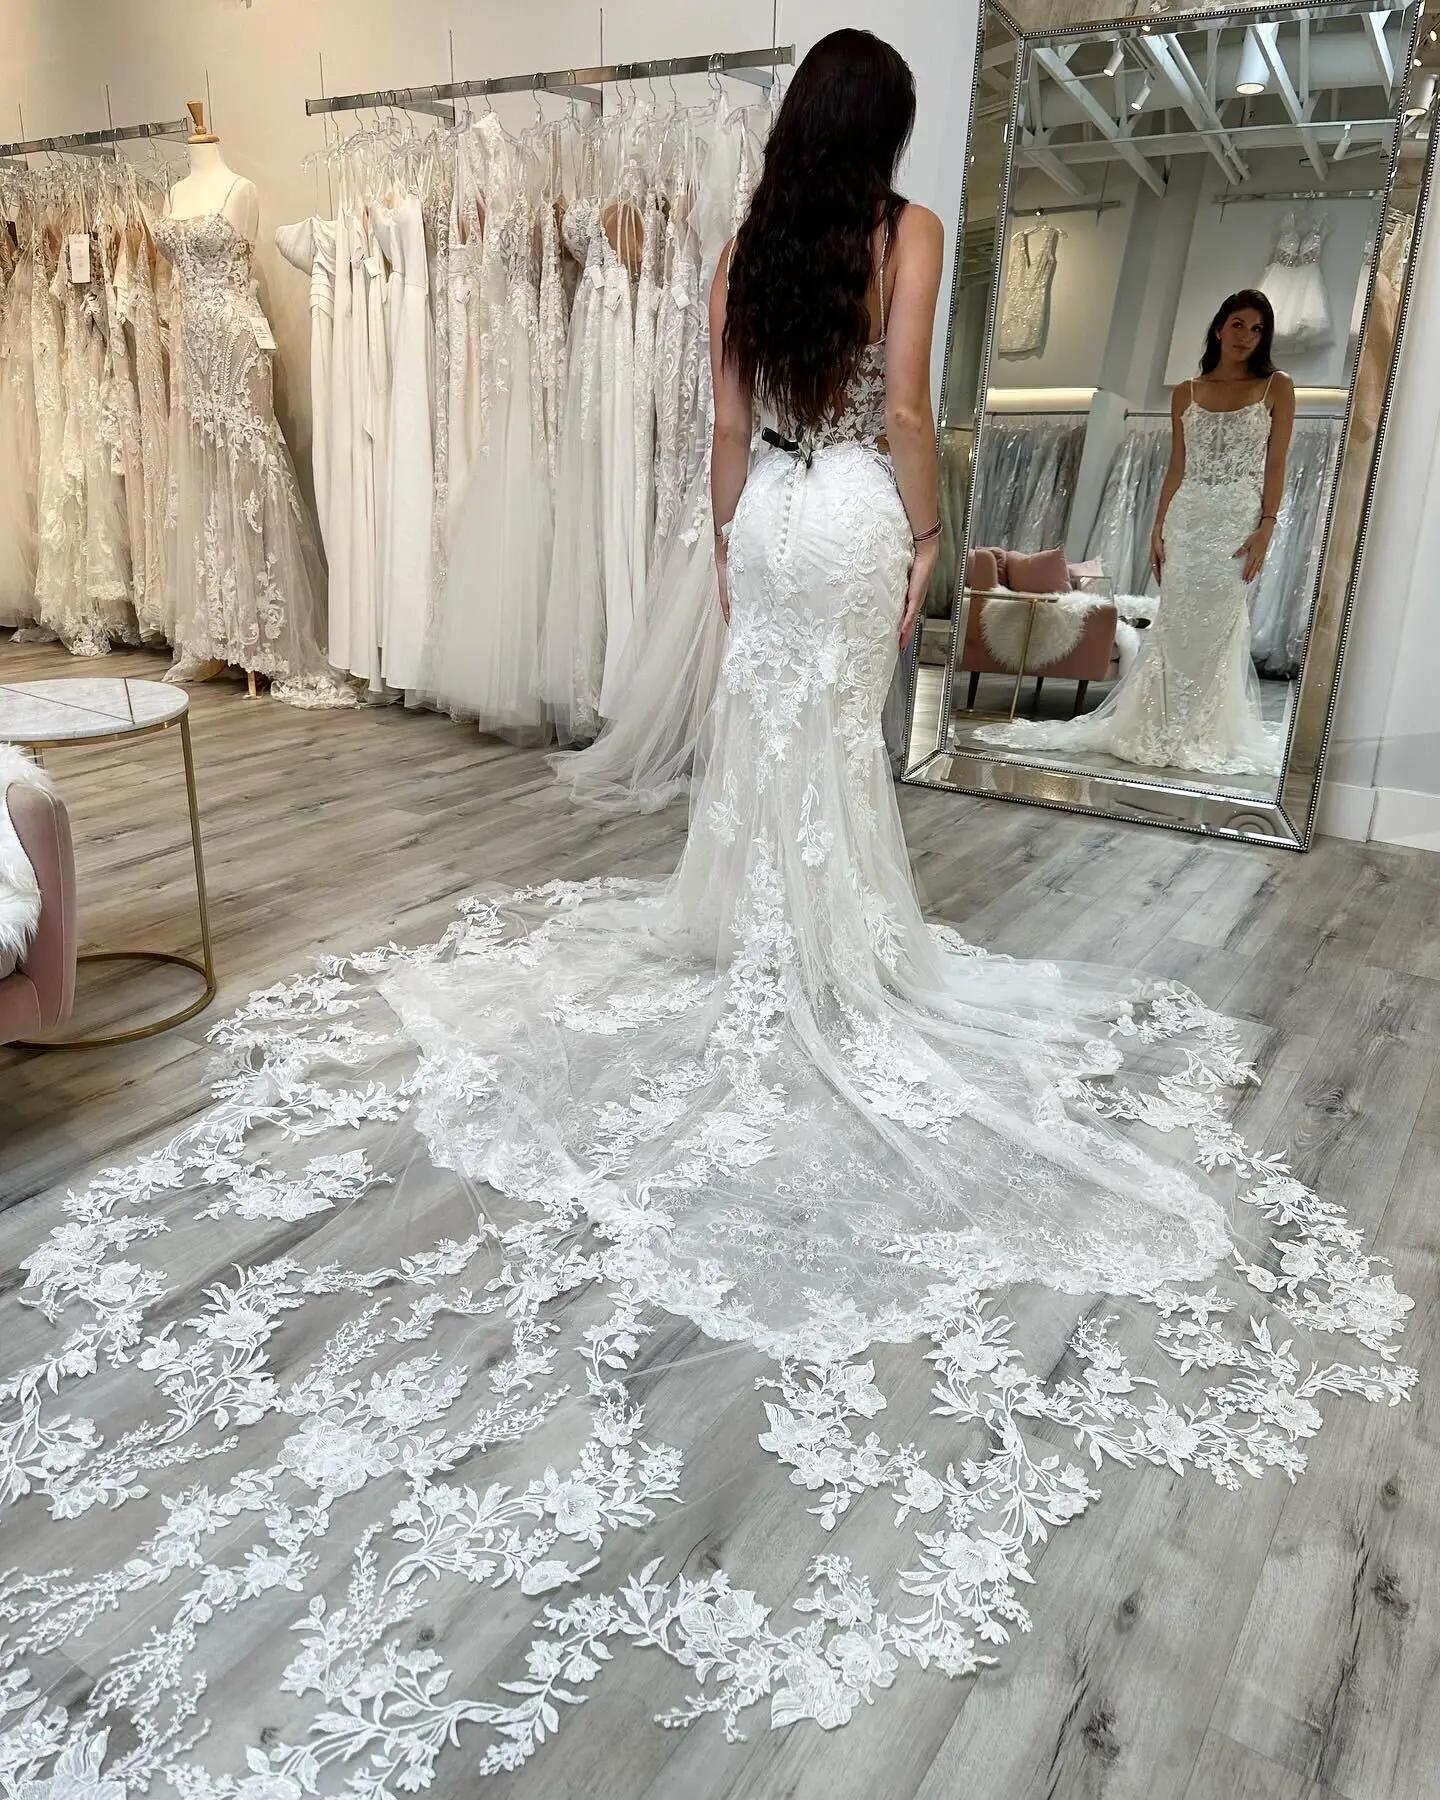 Goddess Glamour: Embrace Ethereal Beauty with the Enzoani Sibylla Wedding Dress Image